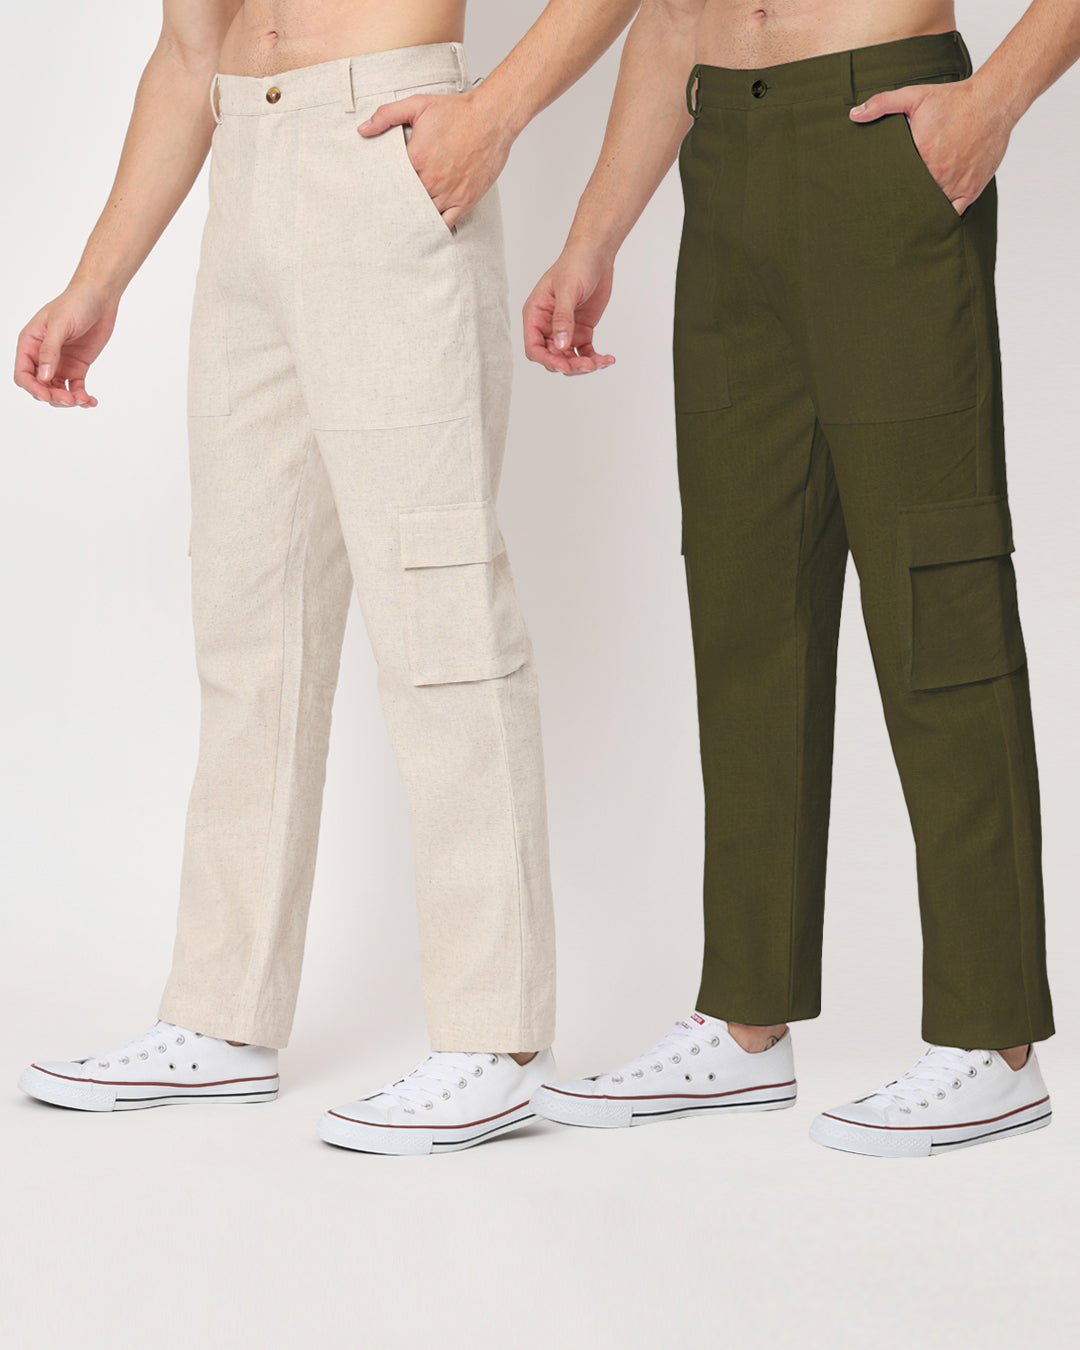 Combo: Function Flex Beige & Olive Green Men's Pants- Set Of 2